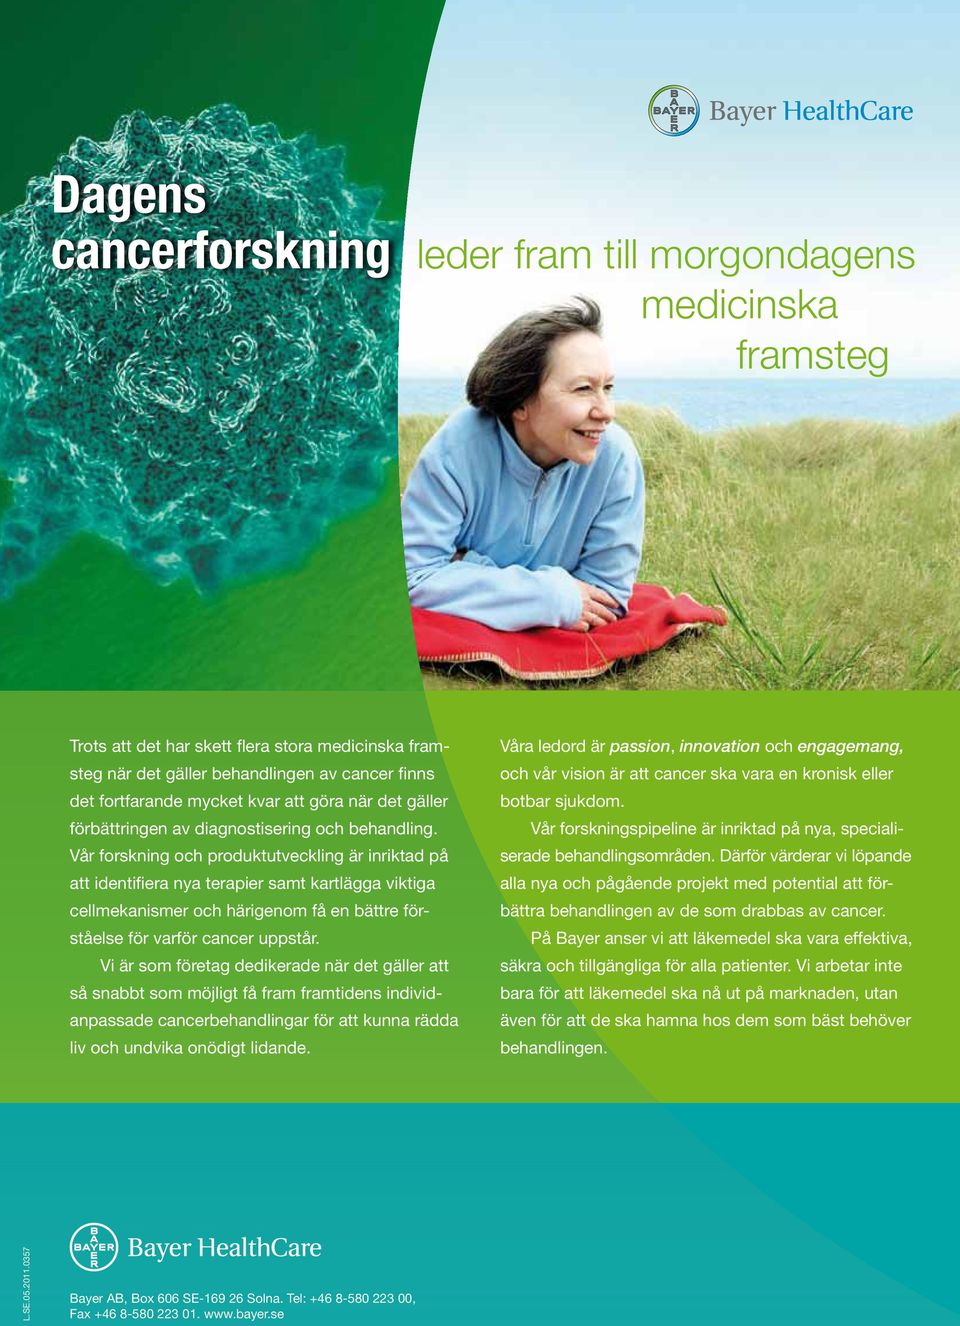 Vår forskning och produktutveckling är inriktad på att identifiera nya terapier samt kartlägga viktiga cell mekanismer och härigenom få en bättre förståelse för varför cancer uppstår.